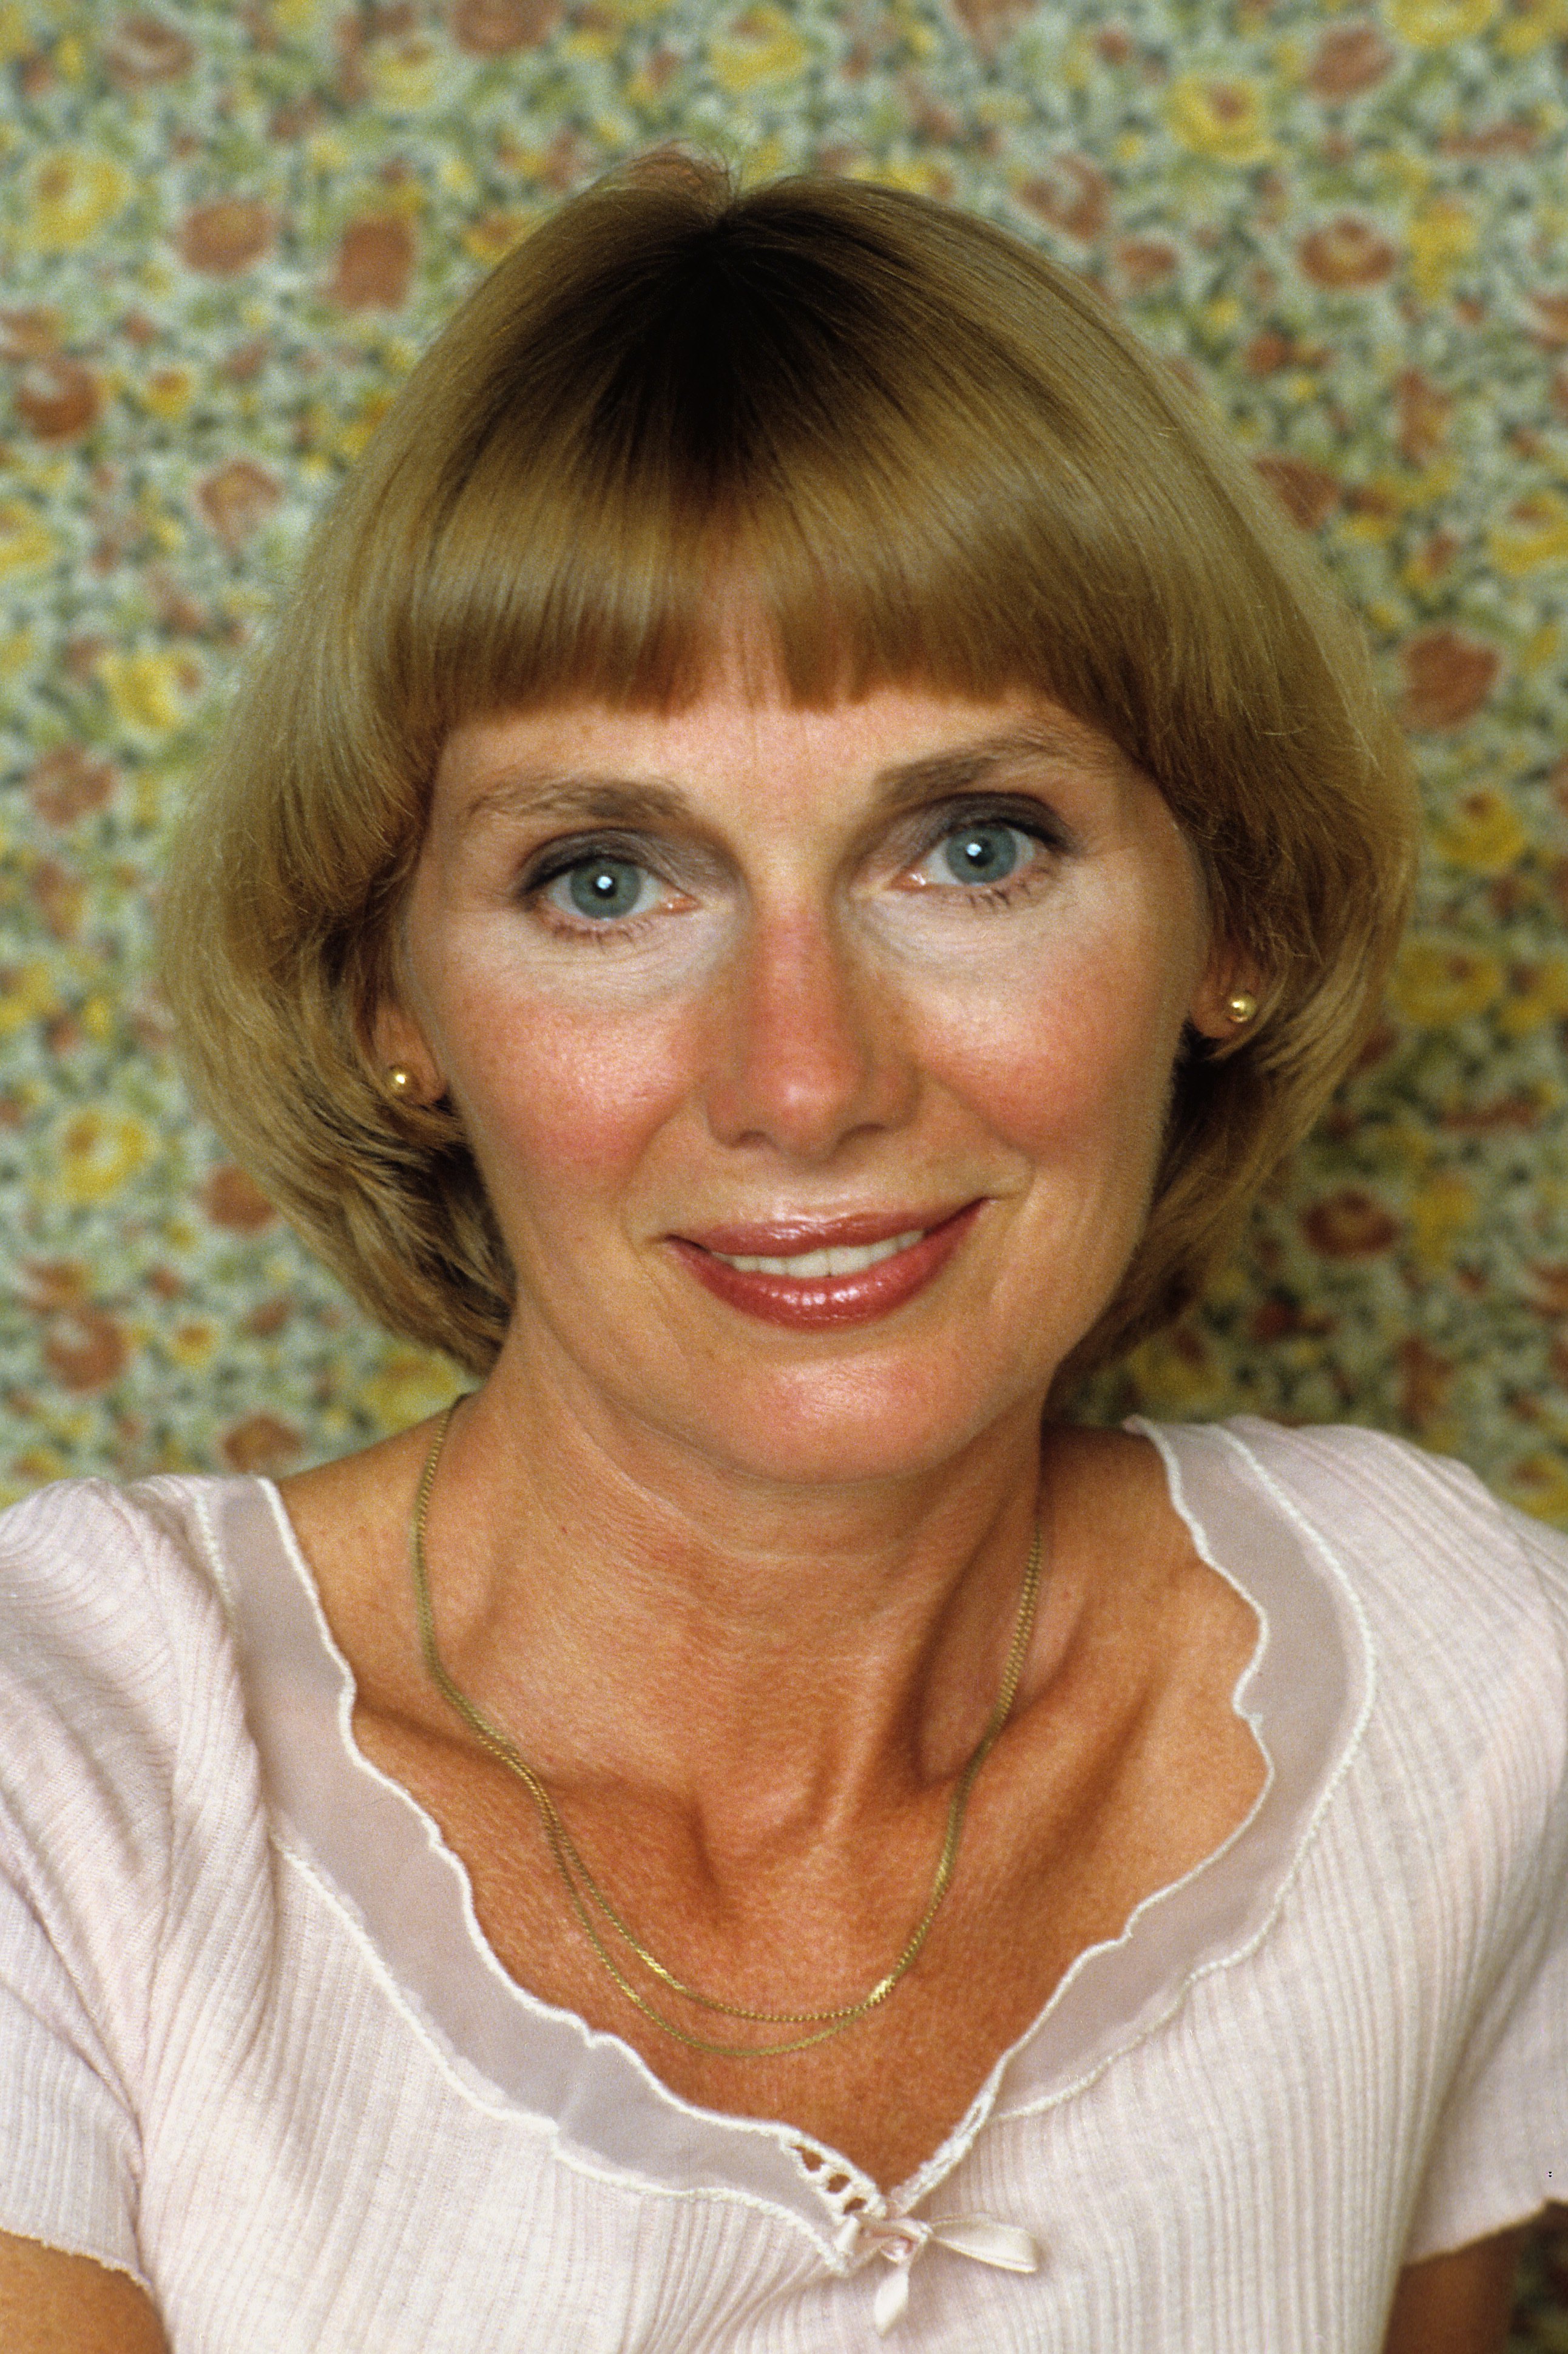 Ein Porträt von Inga Swenson, lächelnd am 1. Januar 1985 in Los Angeles, Kalifornien | Quelle: Getty Images